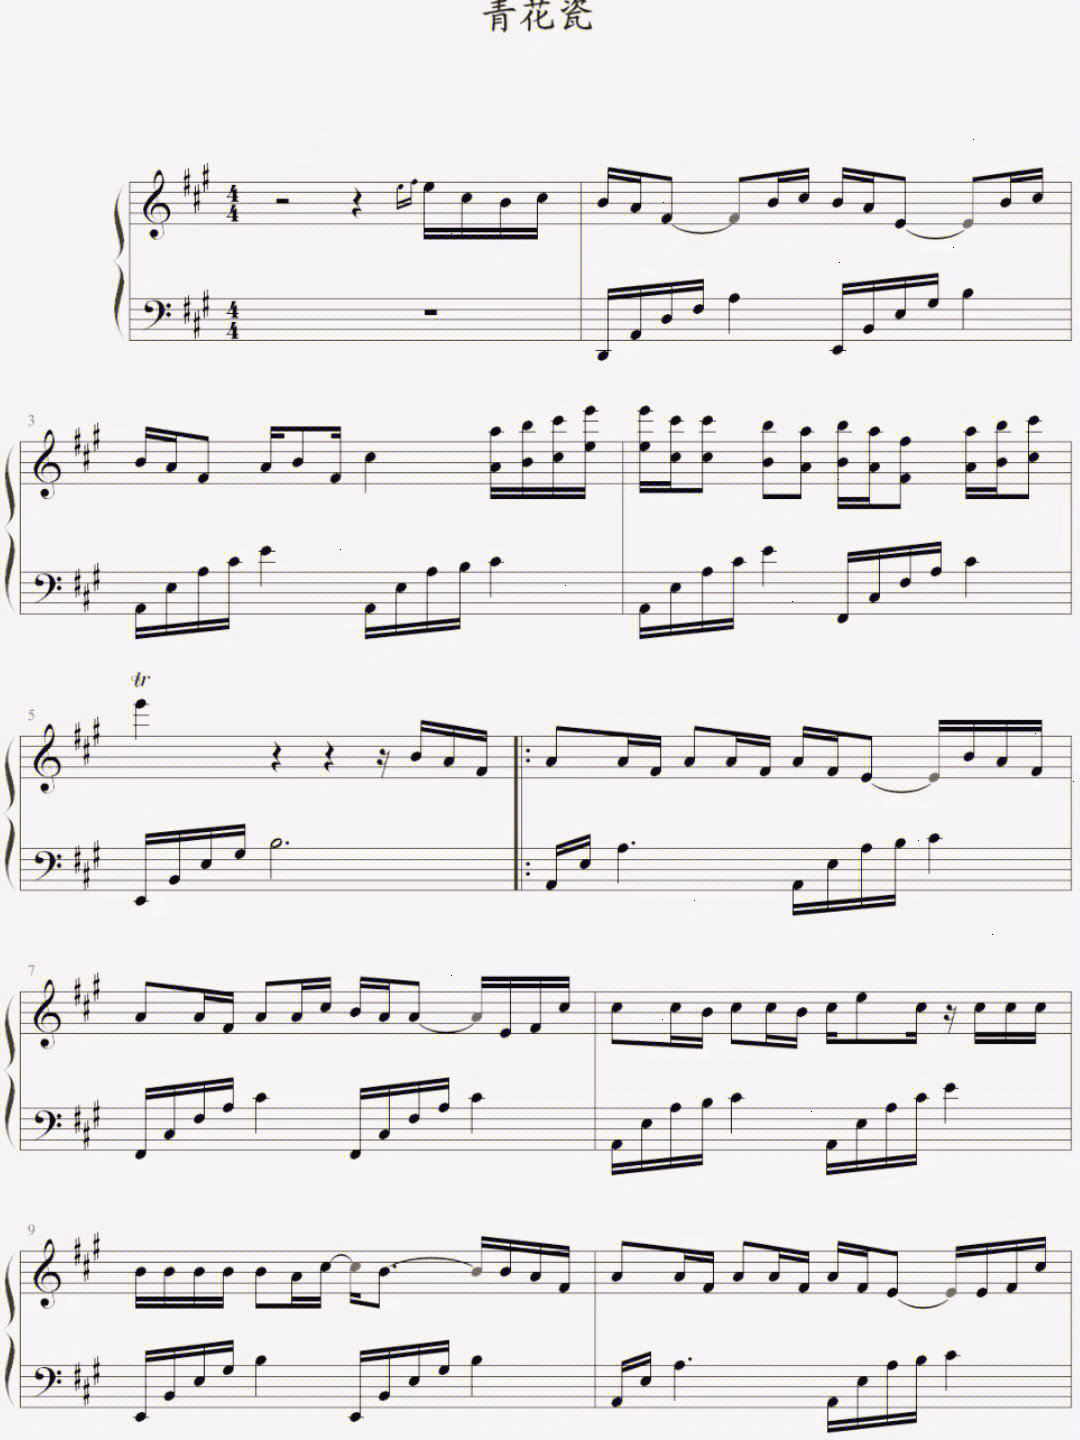 青花瓷大提琴曲谱图片